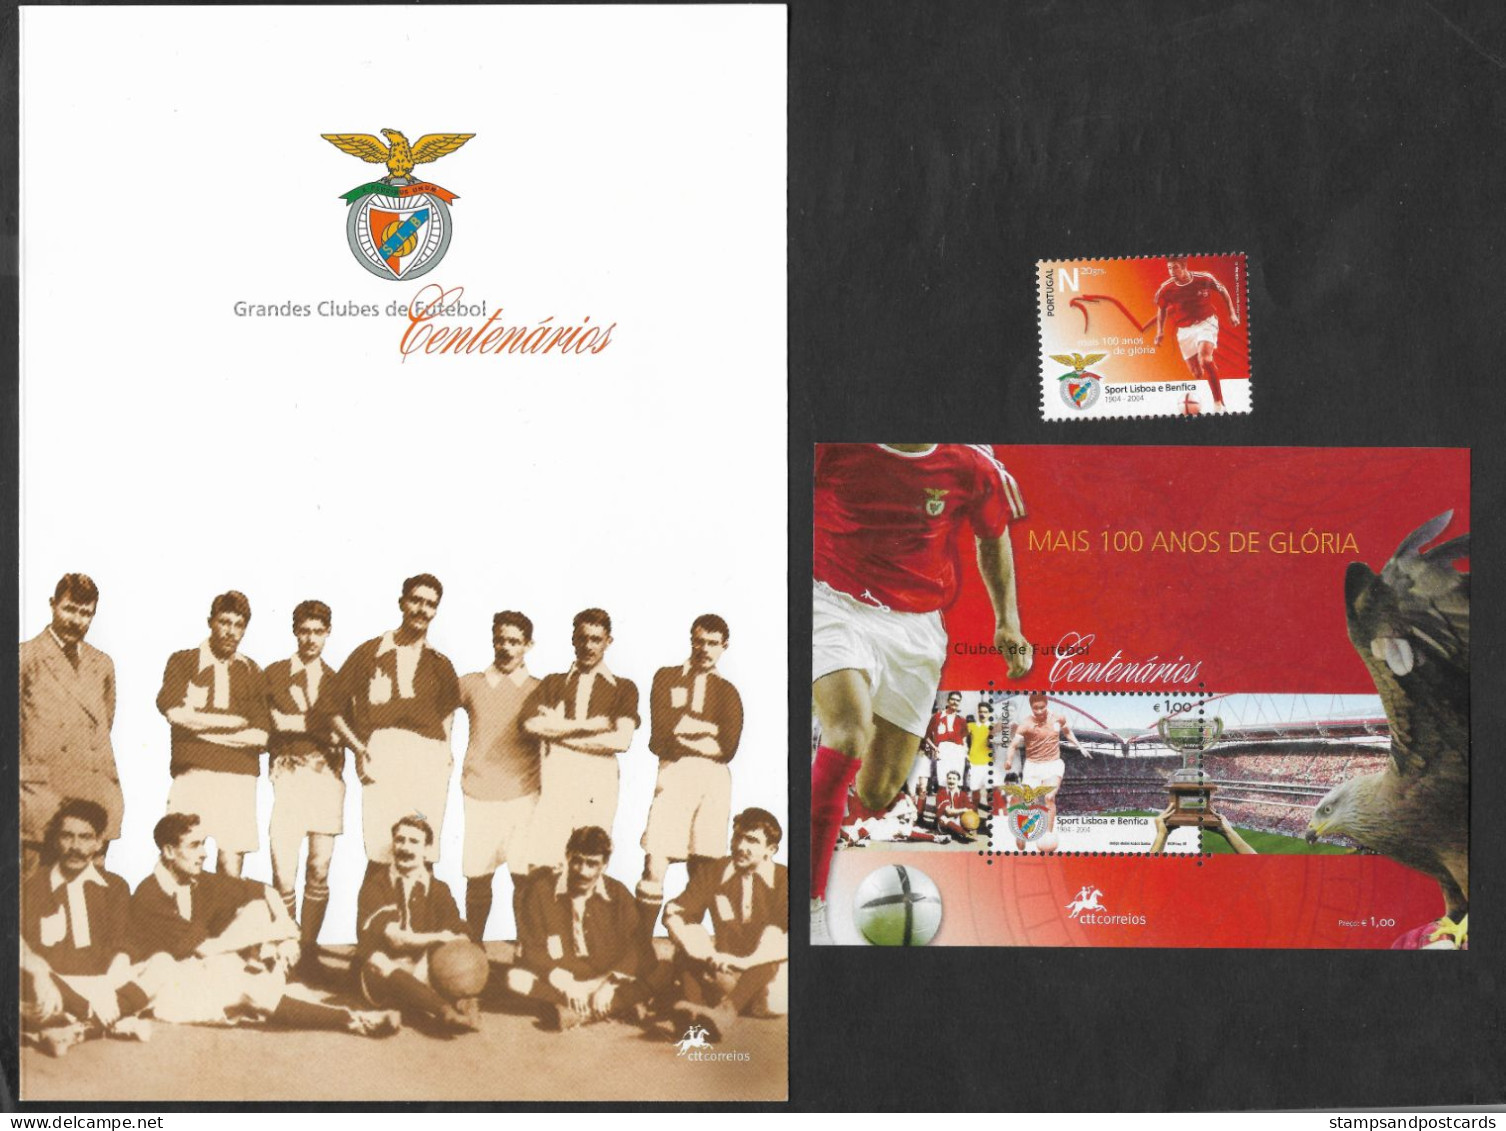 Portugal SLB Benfica Club De Football Clubs Centenaires 2005 Brochure + Timbre + Bloc Soccer Sport Lisboa E Benfica - Clubs Mythiques